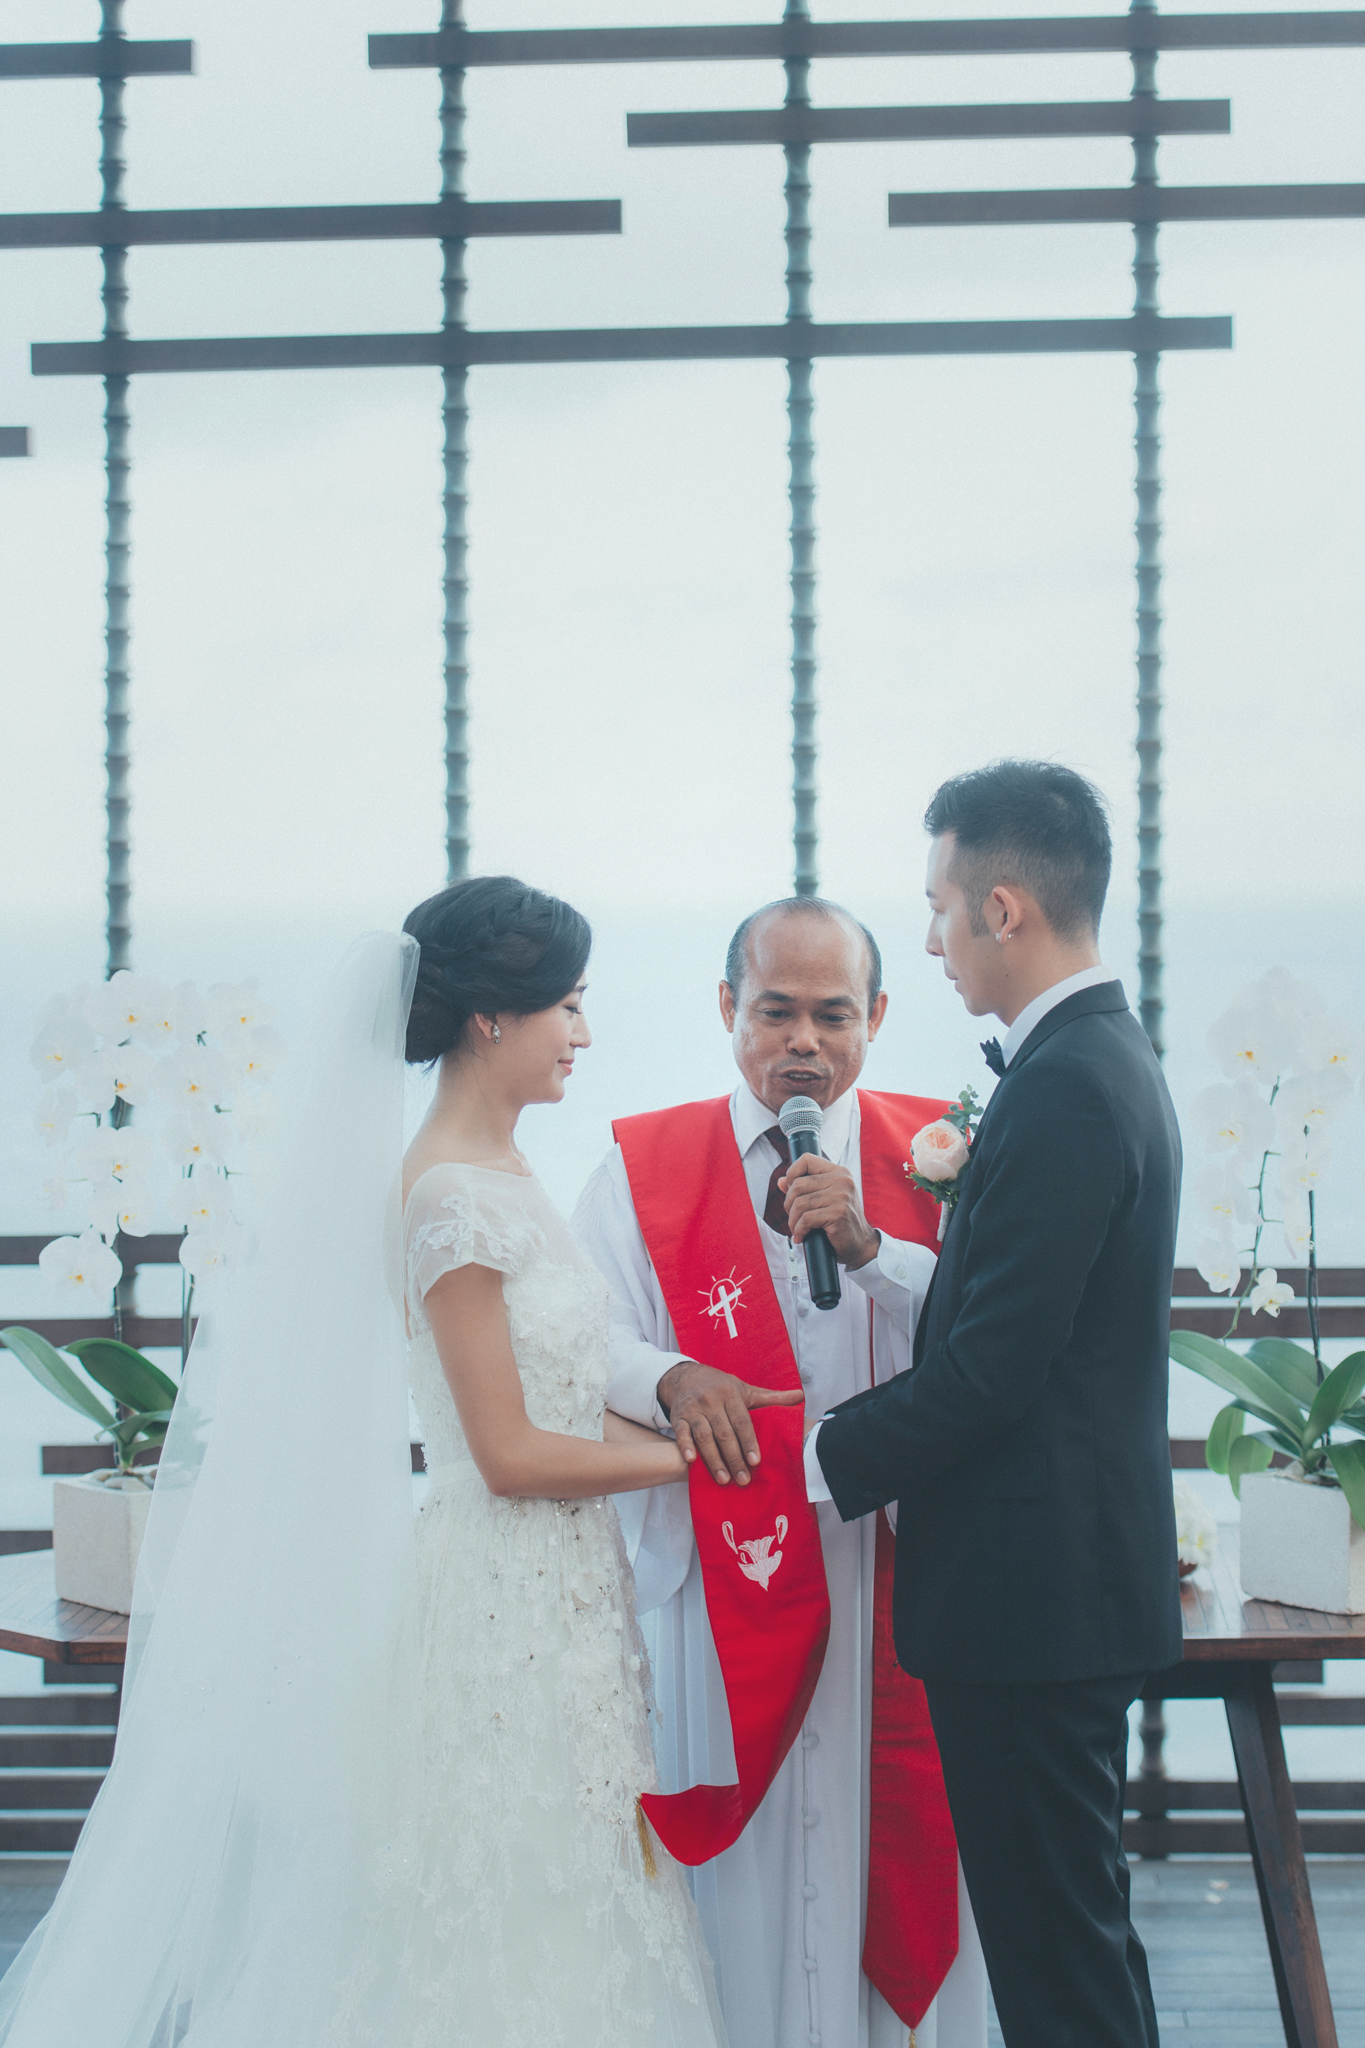 峇里島 婚禮, 海外婚禮, 婚禮紀錄, 婚攝東法, 雙攝影師, 藝術婚禮, Bali alila uluwatu, Donfer, Donfer Photography, EASTERN WEDDING, Wedding Day